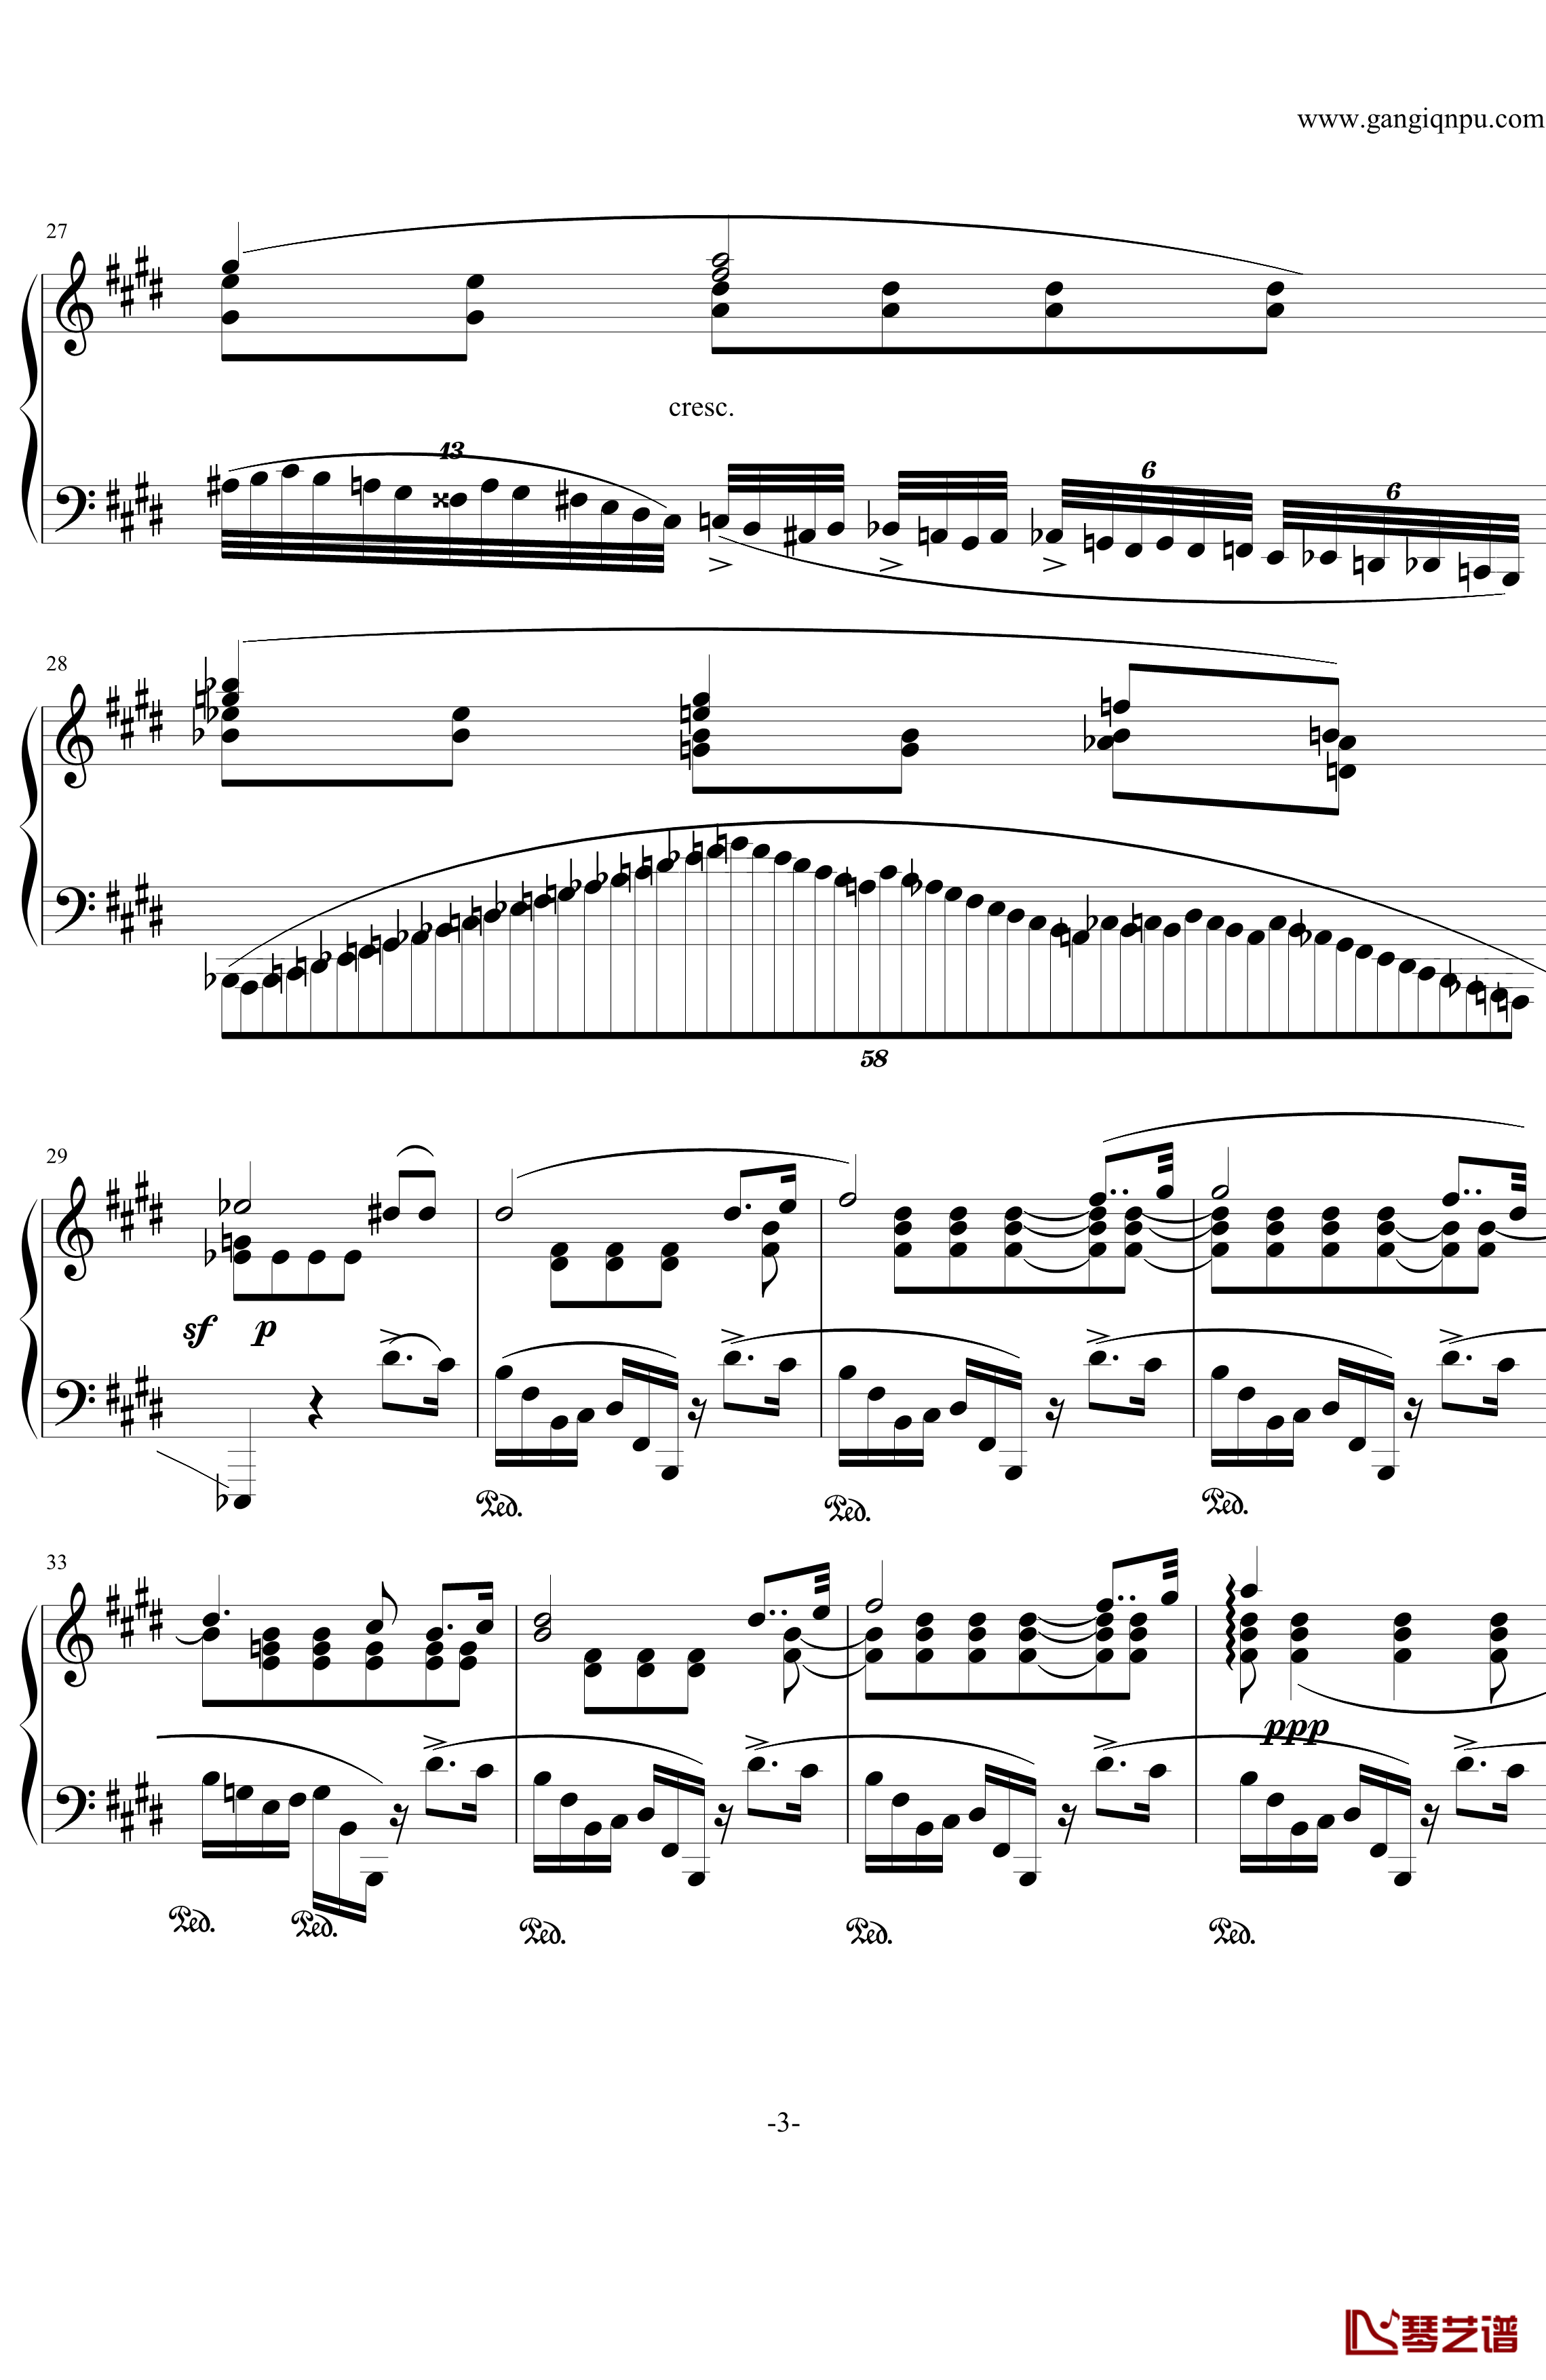 肖邦练习曲第19首钢琴谱-大提琴练习曲-肖邦-chopin3